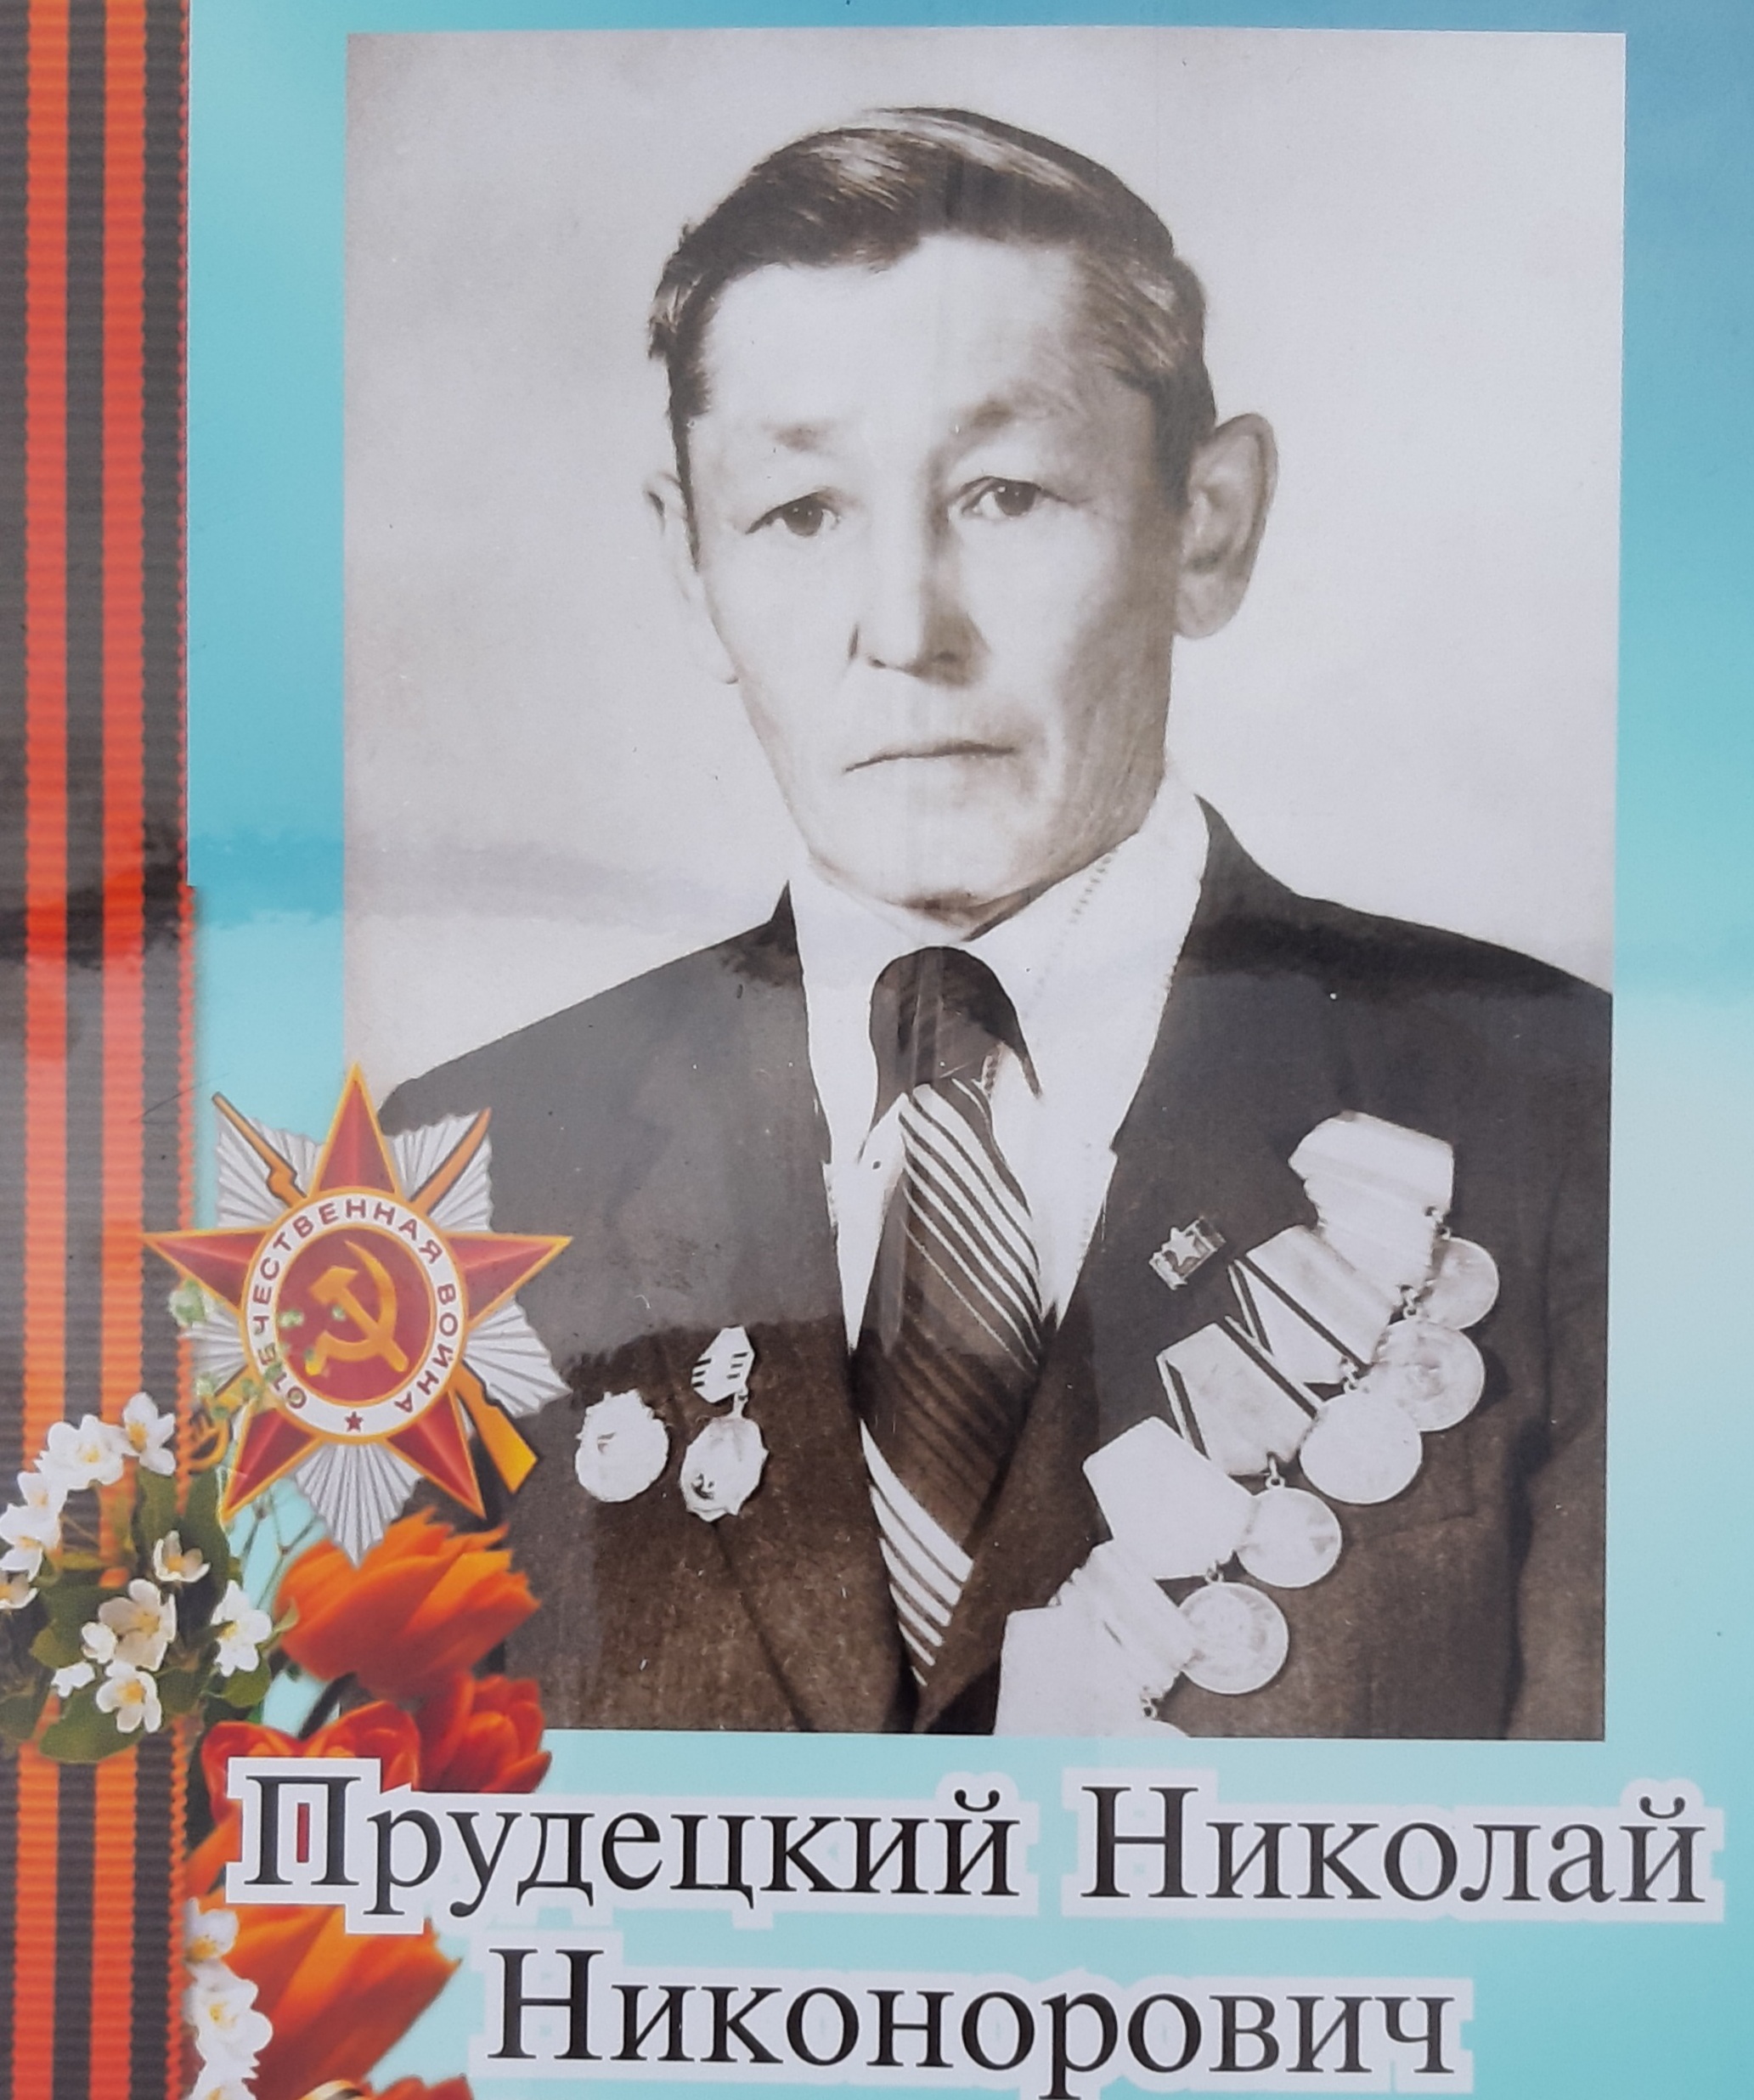 Прудецкий Николай Никонорович